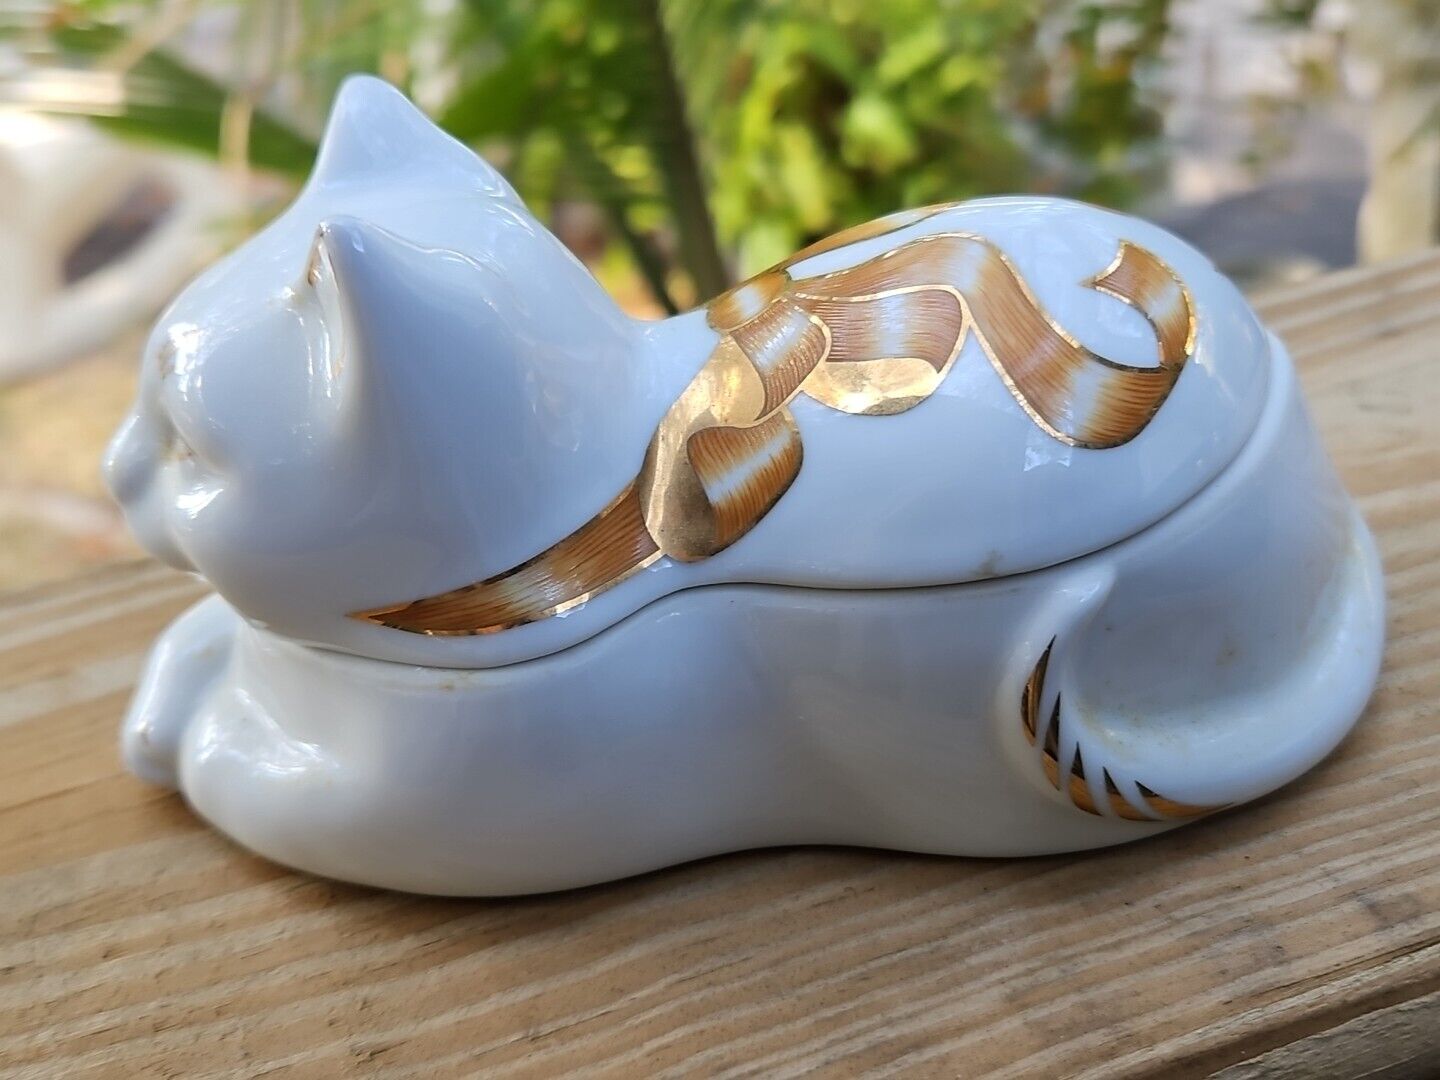 Elizabeth Arden Cat Trinket Box Candle Scented GOLD GILT Vintage Porcelain  Без бренда - фотография #6